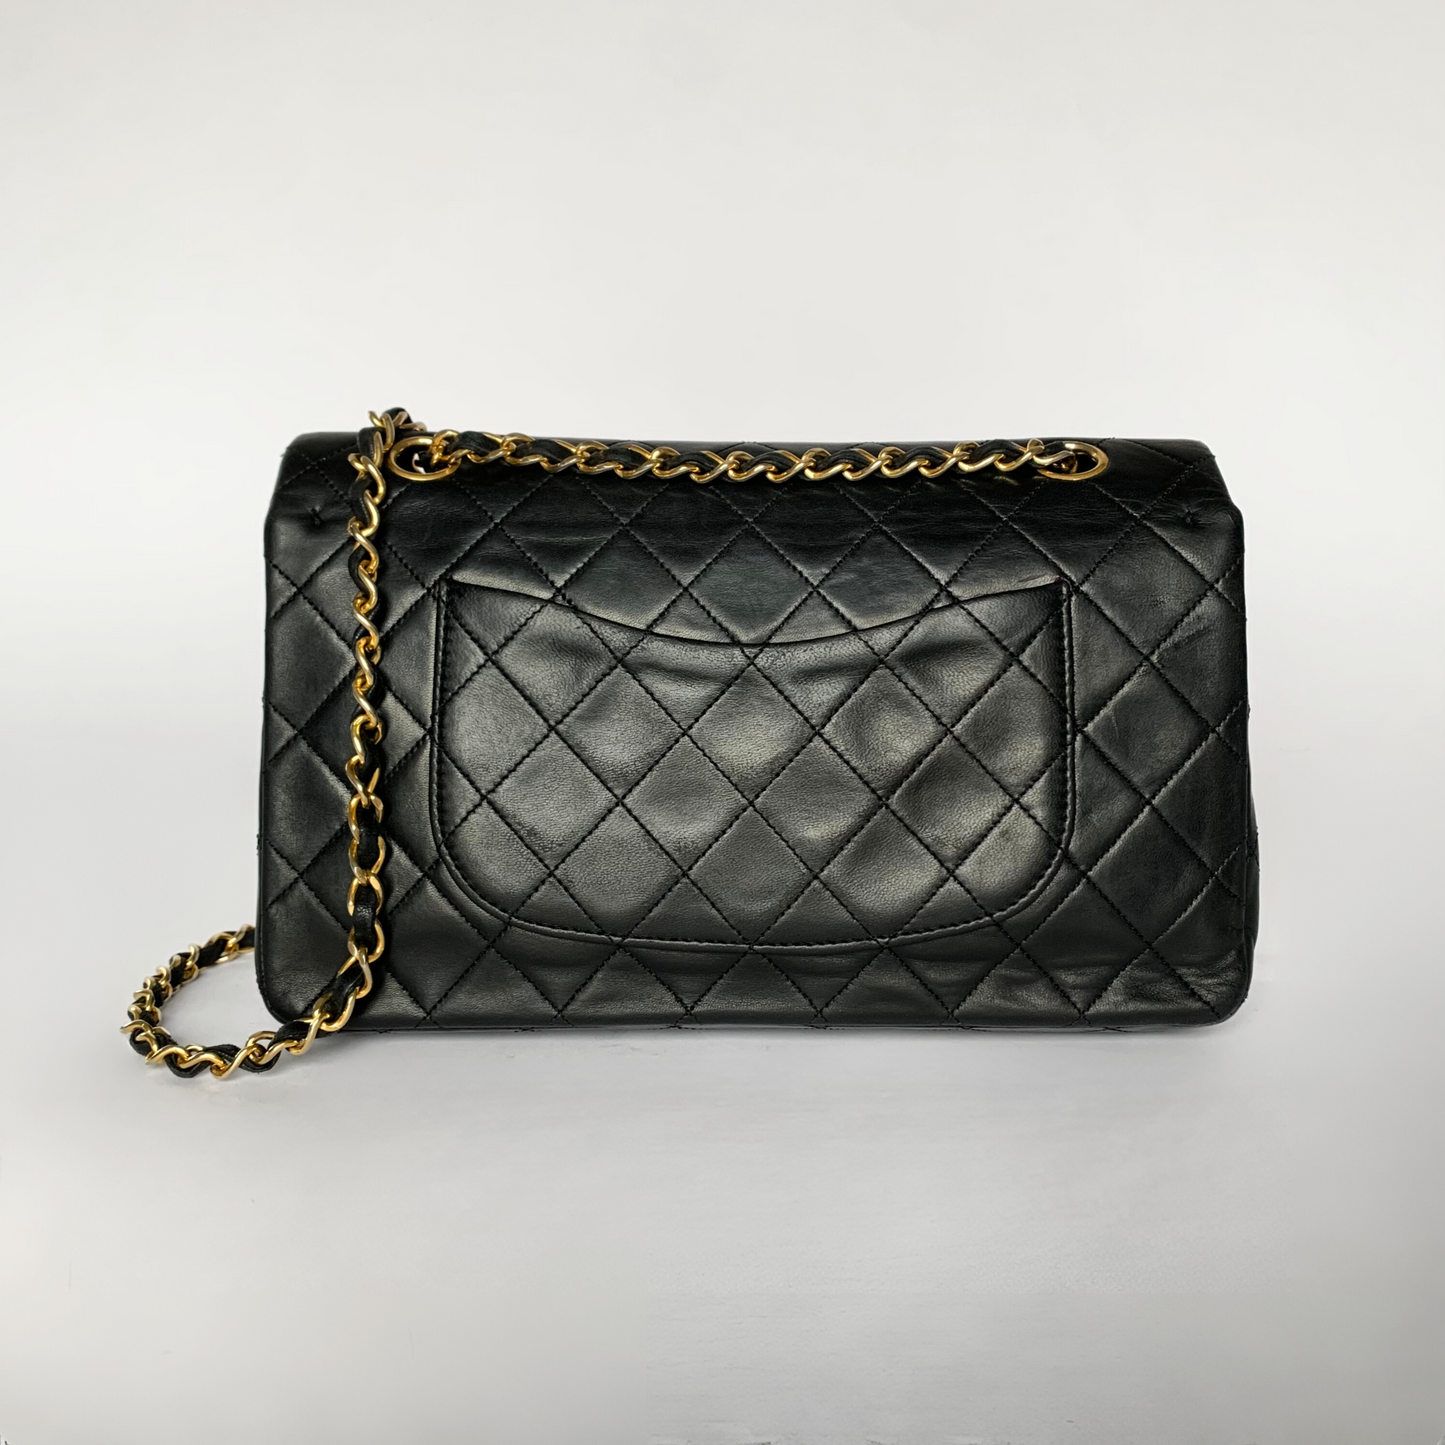 Chanel Chanel Klassiek dubbel Flap Bag Medium lamsleer - handtas - Etoile Luxury Vintage